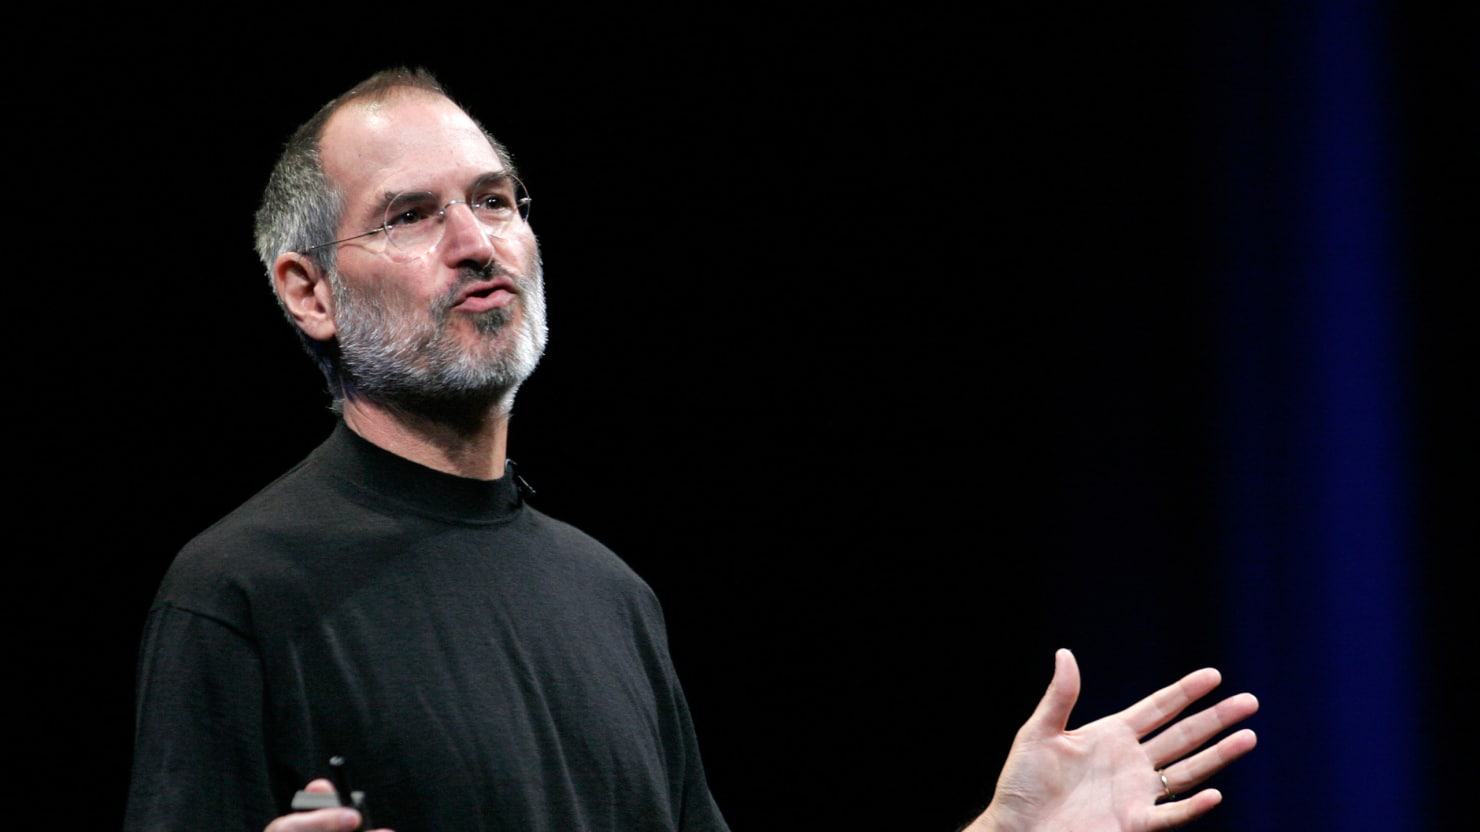 Ma lenne 63 éves Steve Jobs - Itt van 5 érdekes tény az életéből